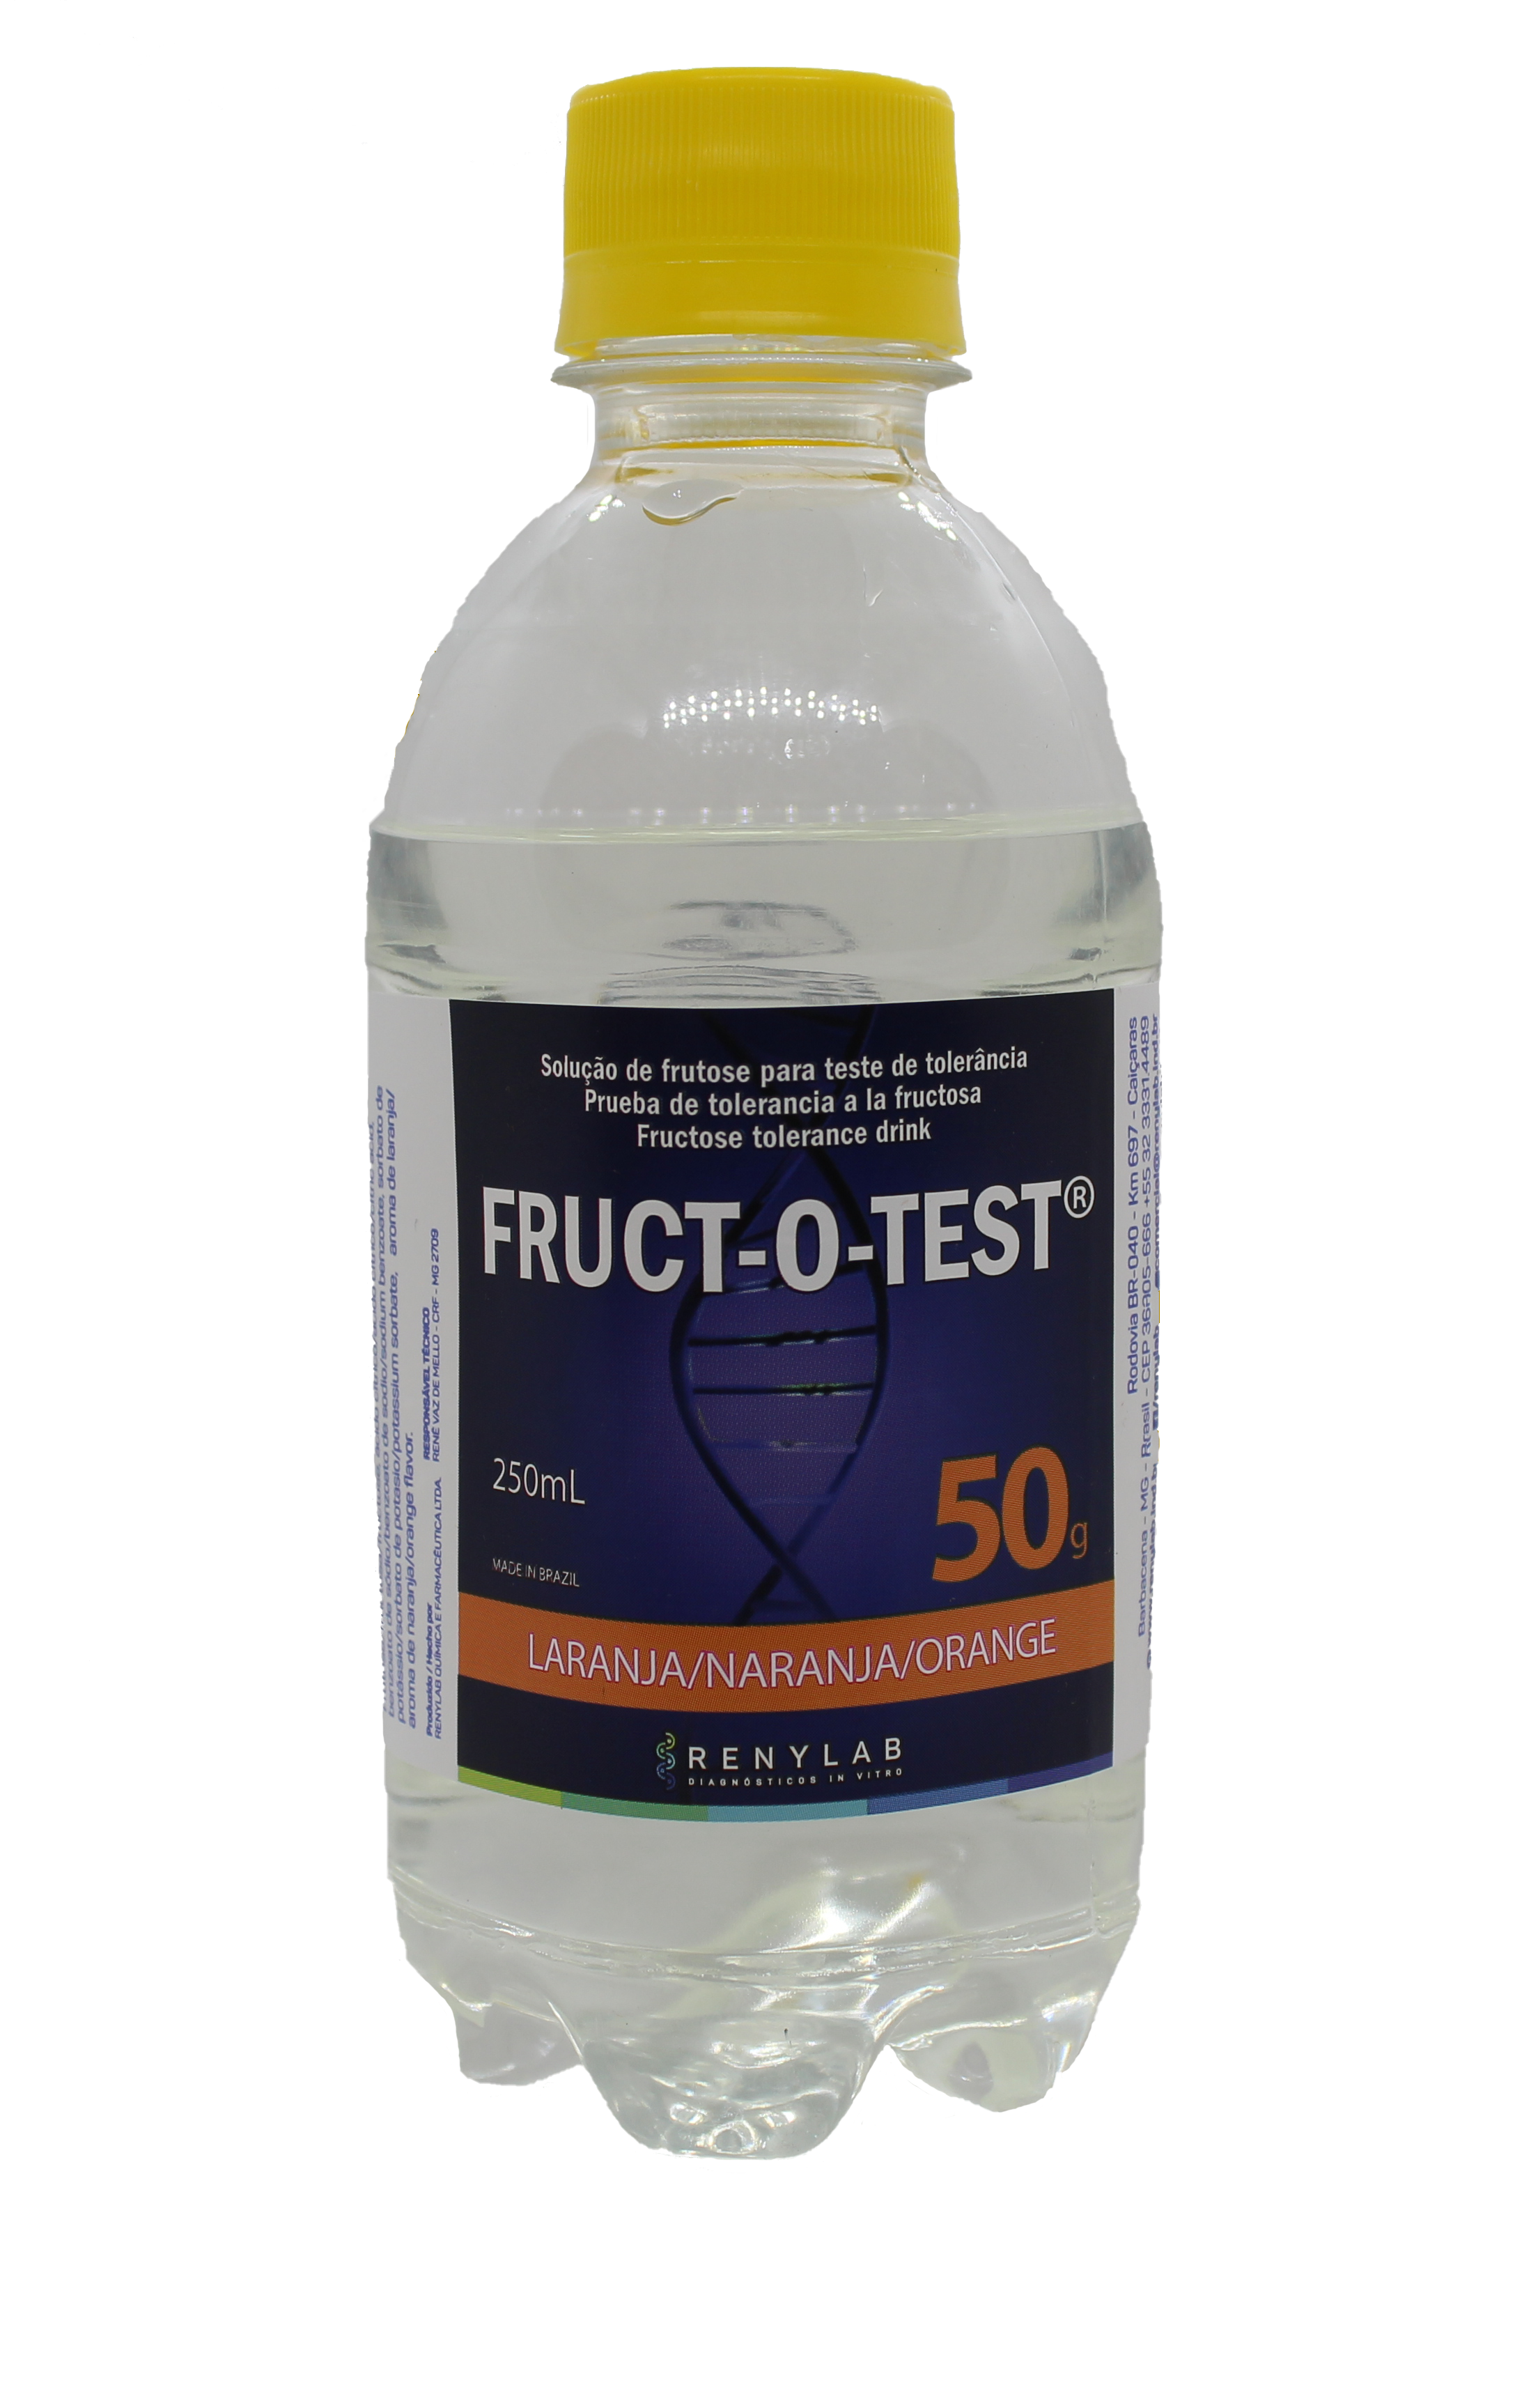 Fruct-o-test® 50g (Solução de Frutose)